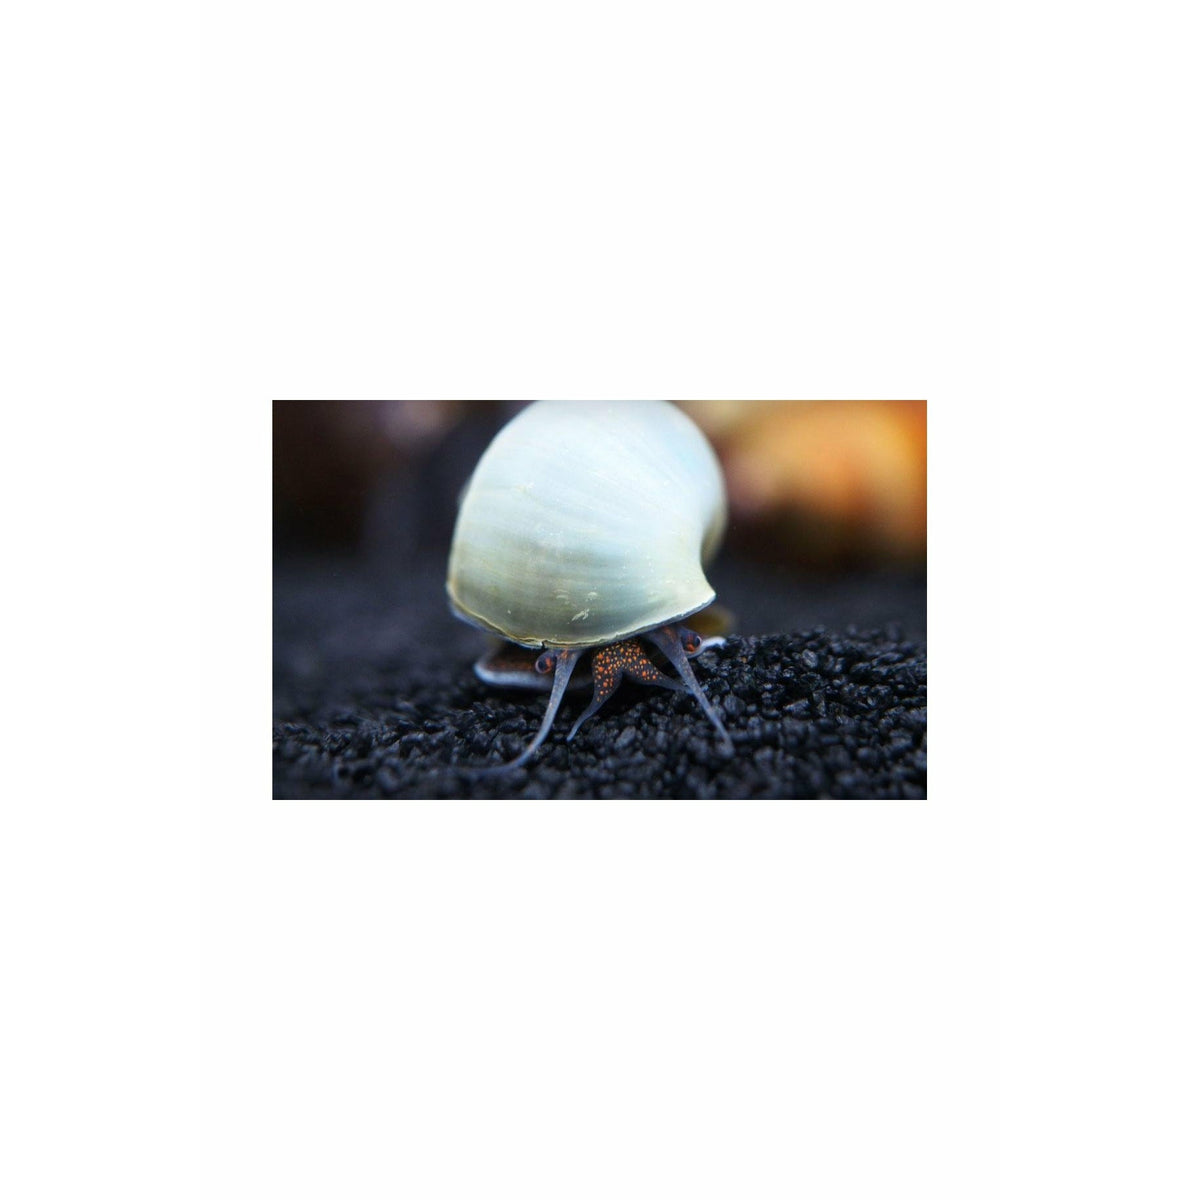 Ramshorn Snail – Best4Pets